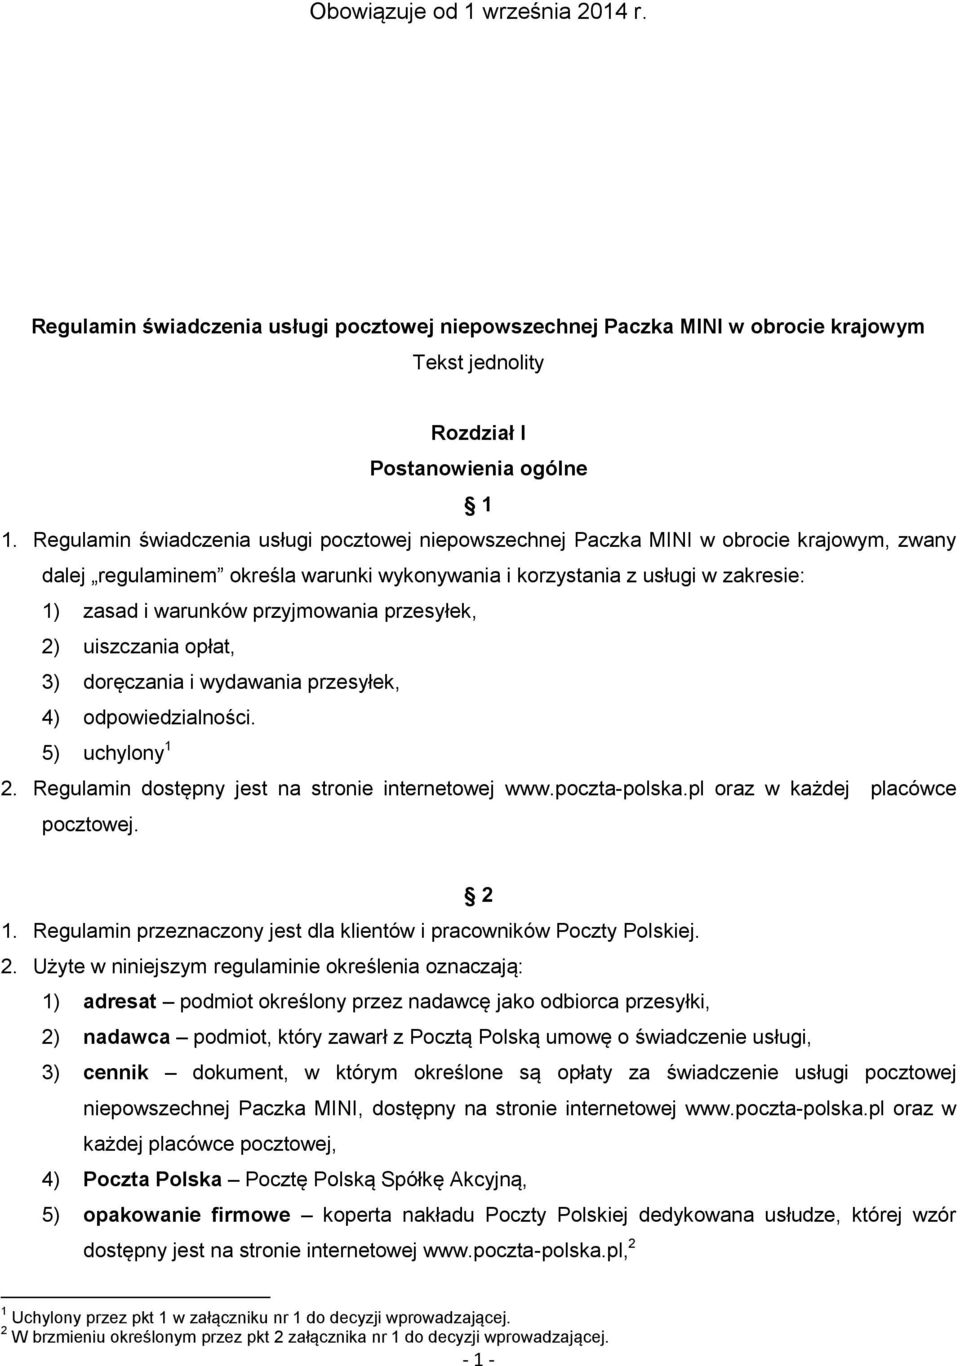 przyjmowania przesyłek, 2) uiszczania opłat, 3) doręczania i wydawania przesyłek, 4) odpowiedzialności. 5) uchylony 1 2. Regulamin dostępny jest na stronie internetowej www.poczta-polska.